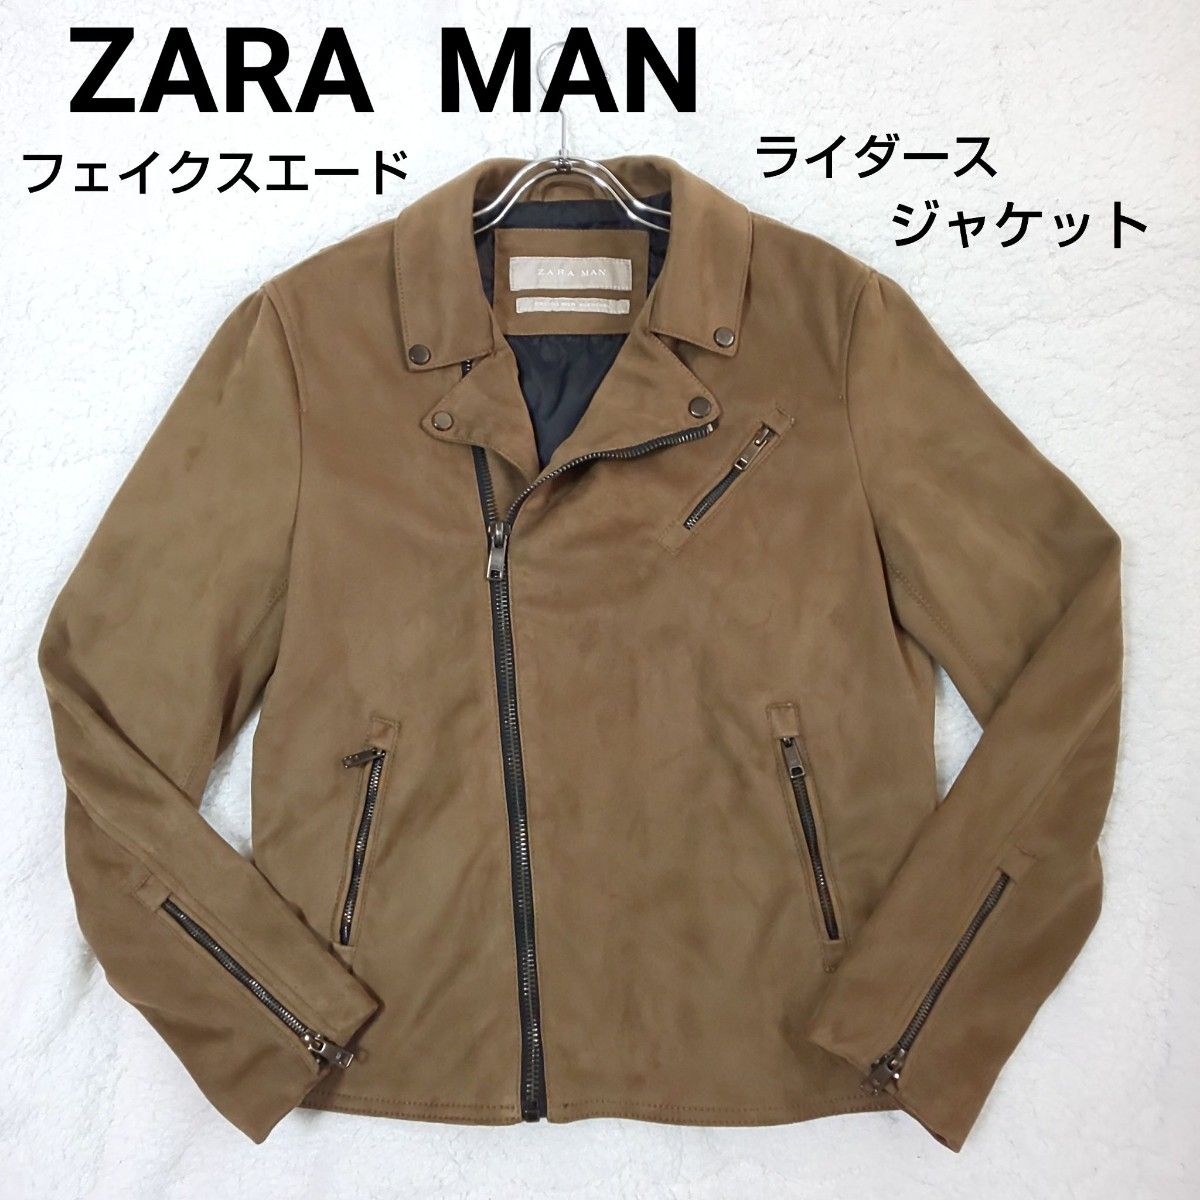 ZARA  MAN  ザラマン フェイクスエード ライダースジャケット